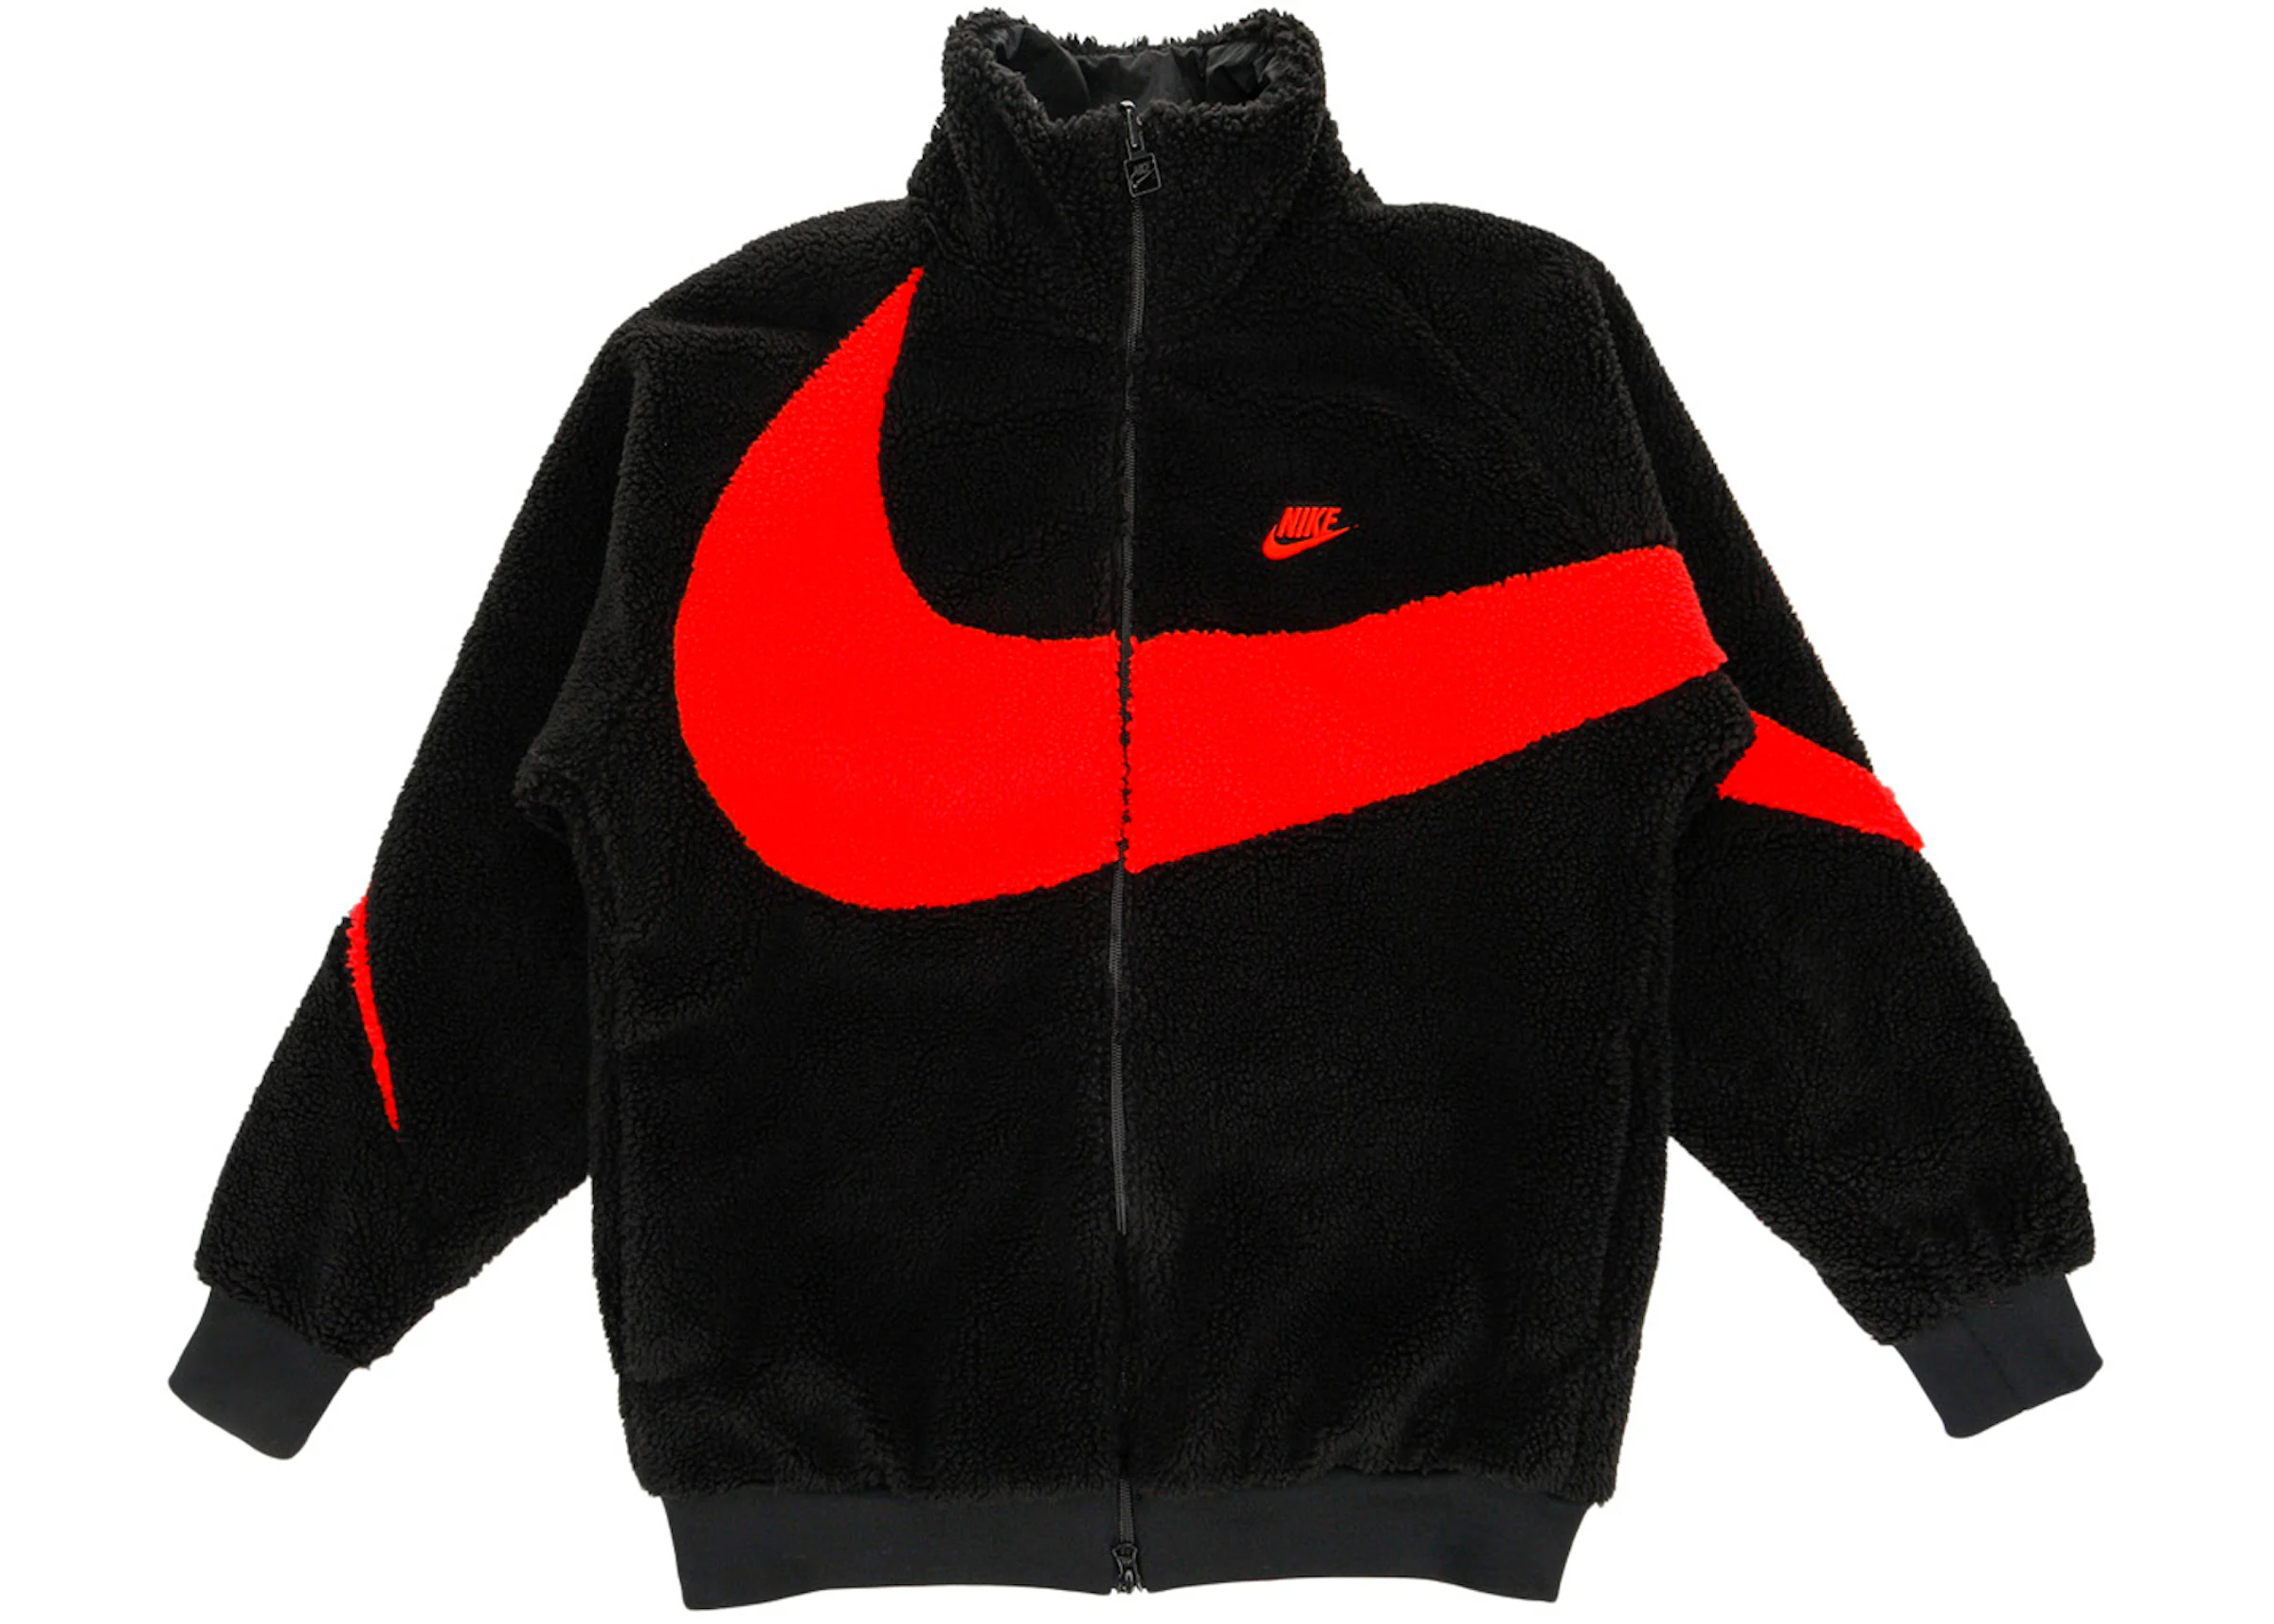 Nike Big Swoosh Reversible Boa Jacket (Asia Sizing) Black Chili Red